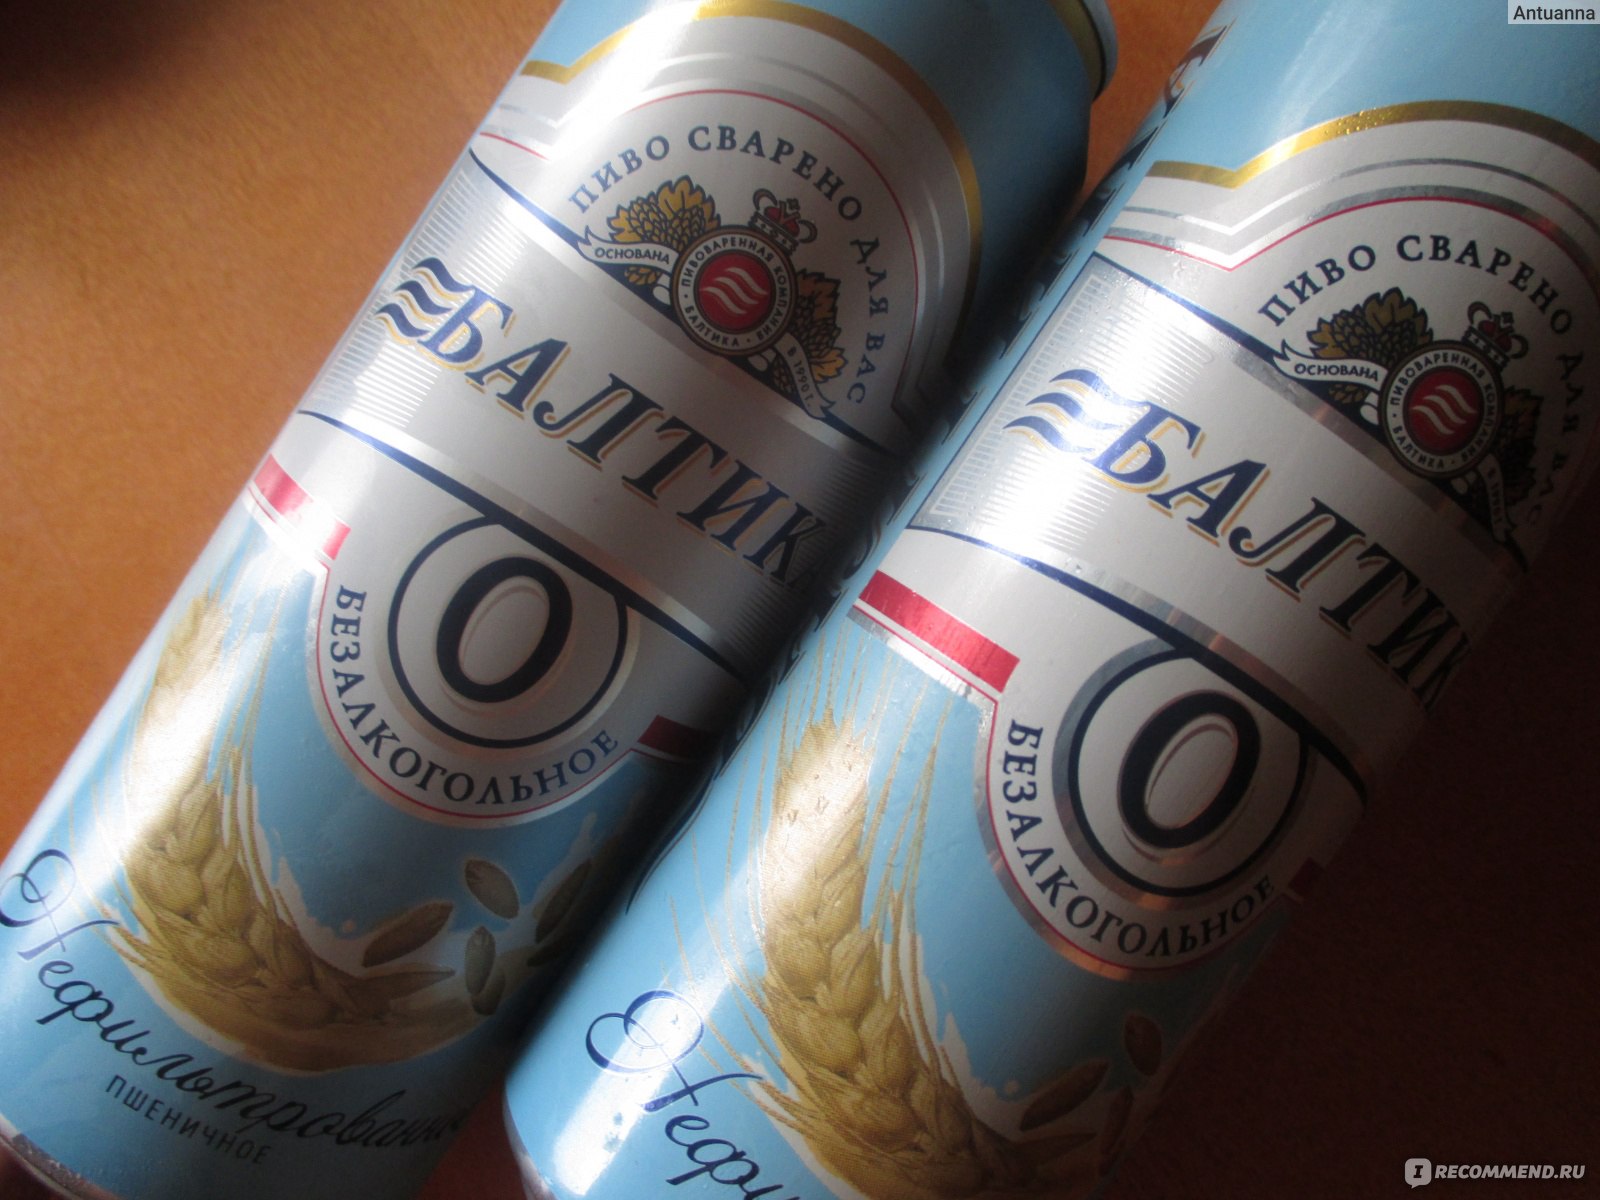 Балтика 0 сколько. Балтика 5 пиво. Пиво Балтика пшеничное нефильтрованное. Пиво нулевка Балтика пшеничное. Балтика нефильтрованное безалкогольное.